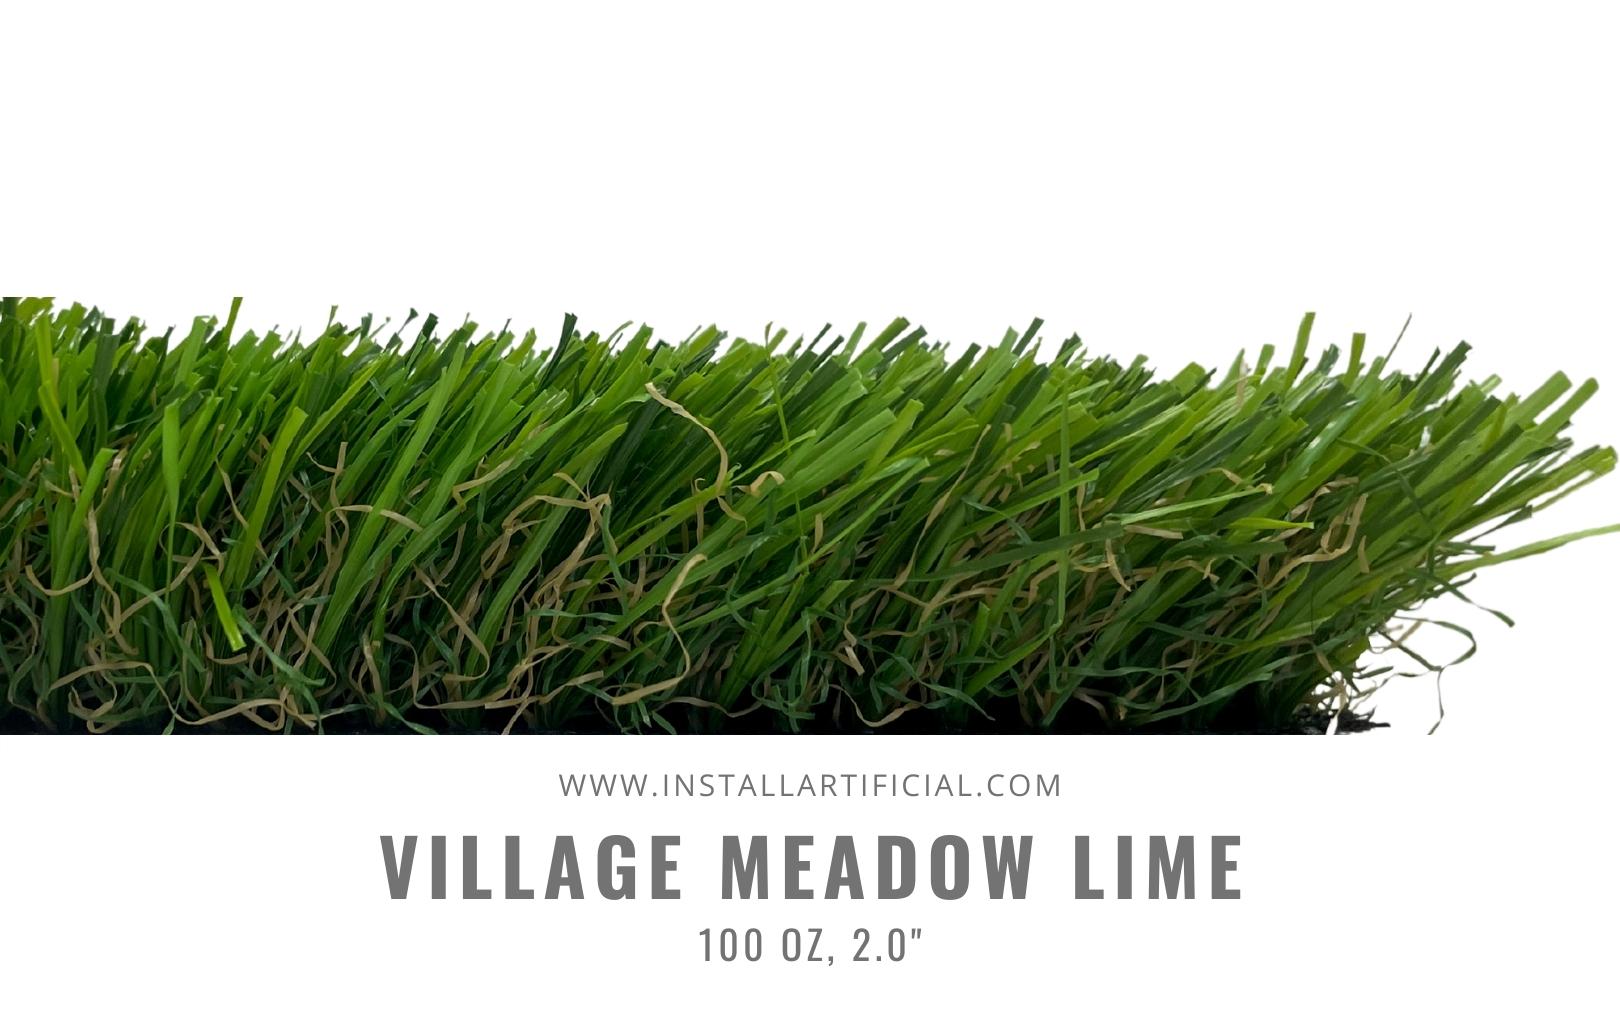 Village Meadow Lime, Shawgrass, side